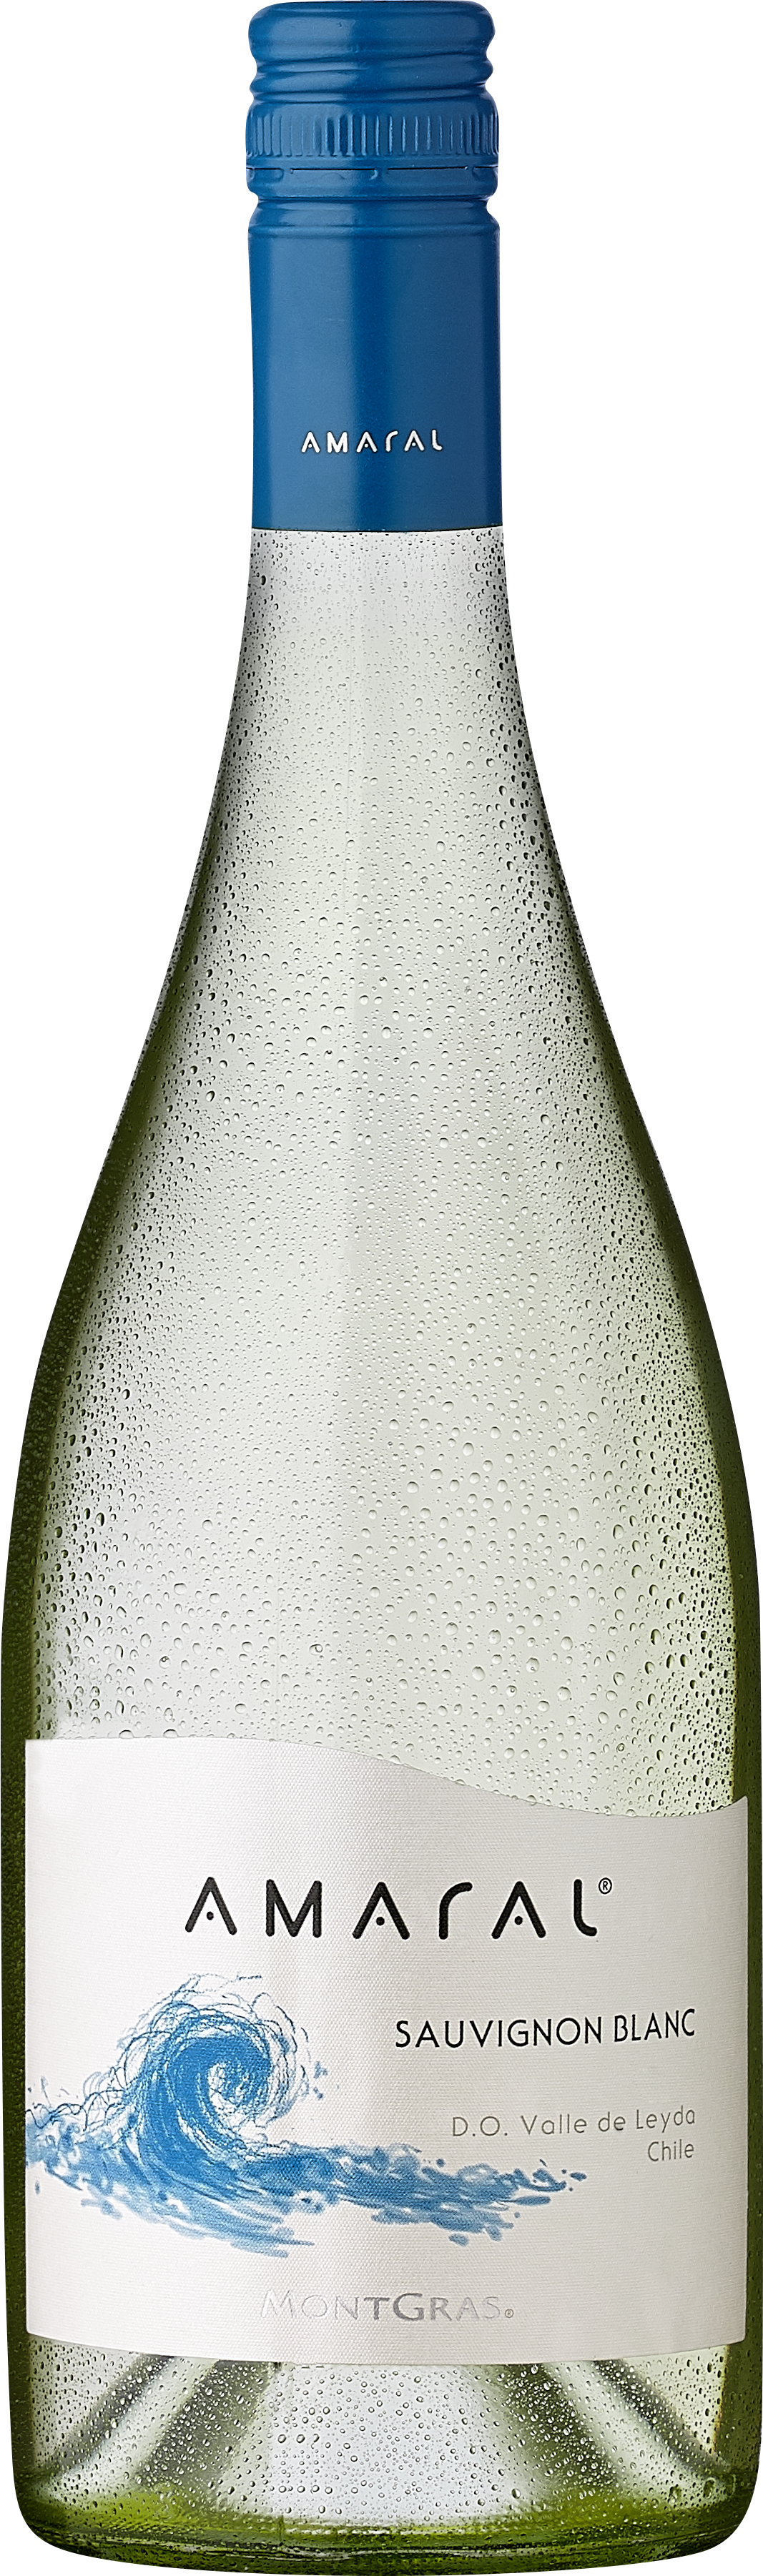 Köstlichalkoholisches - Amaral Sauvignon Blanc - Onlineshop Ludwig von Kapff